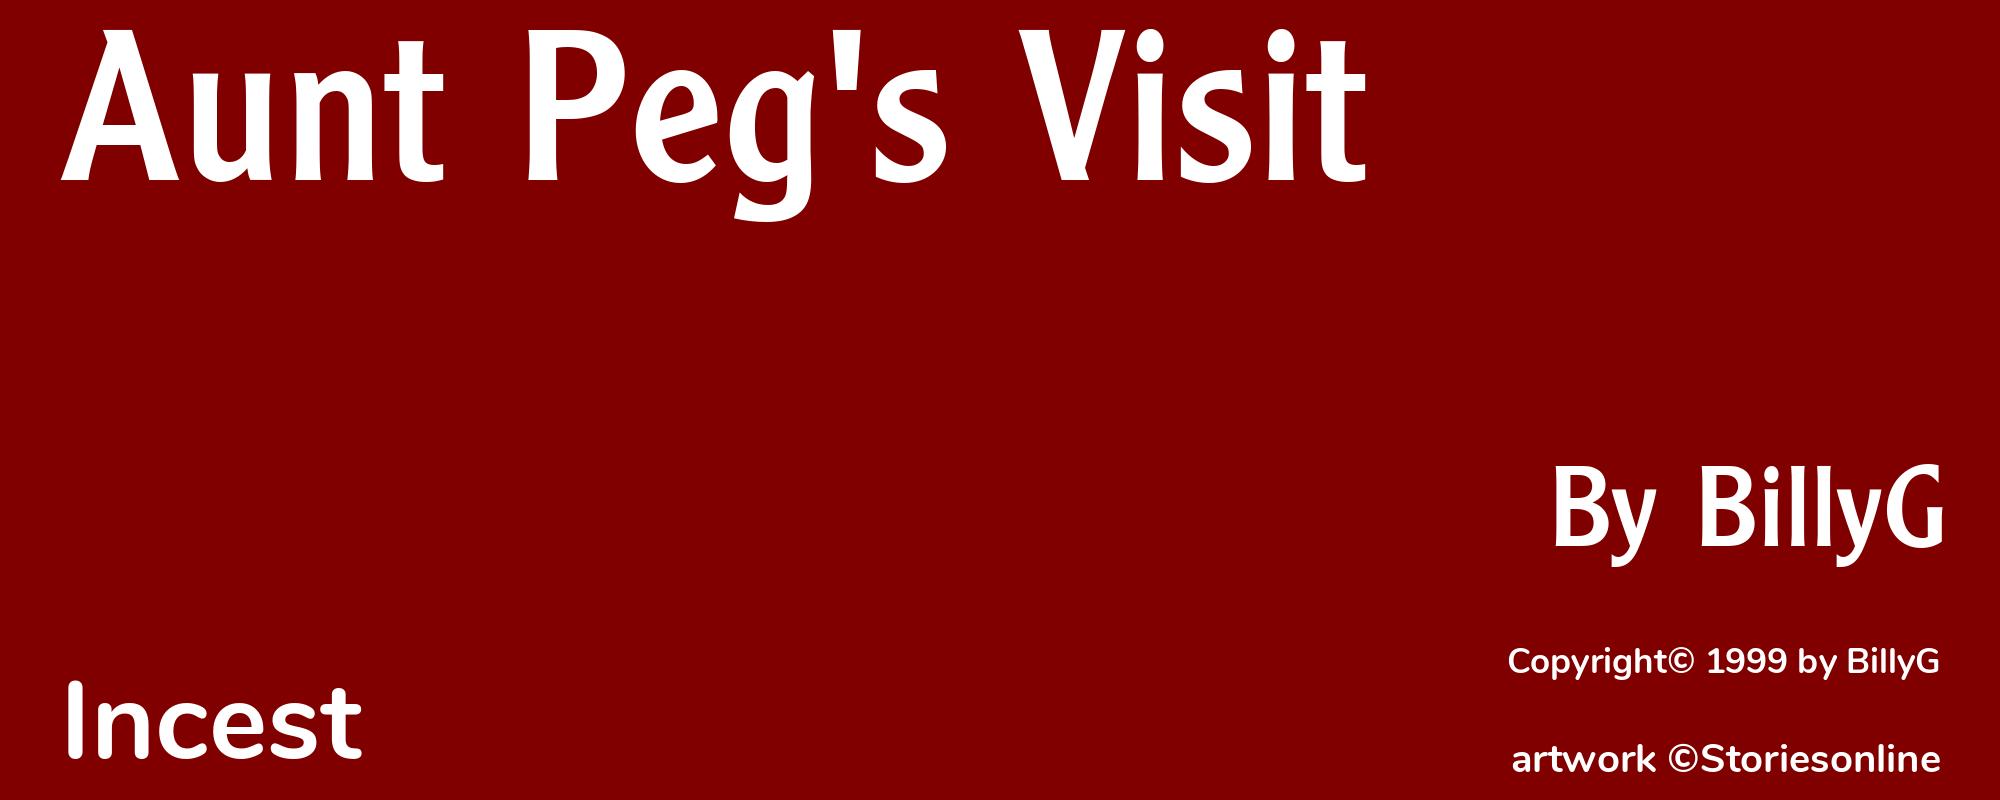 Aunt Peg's Visit - Cover